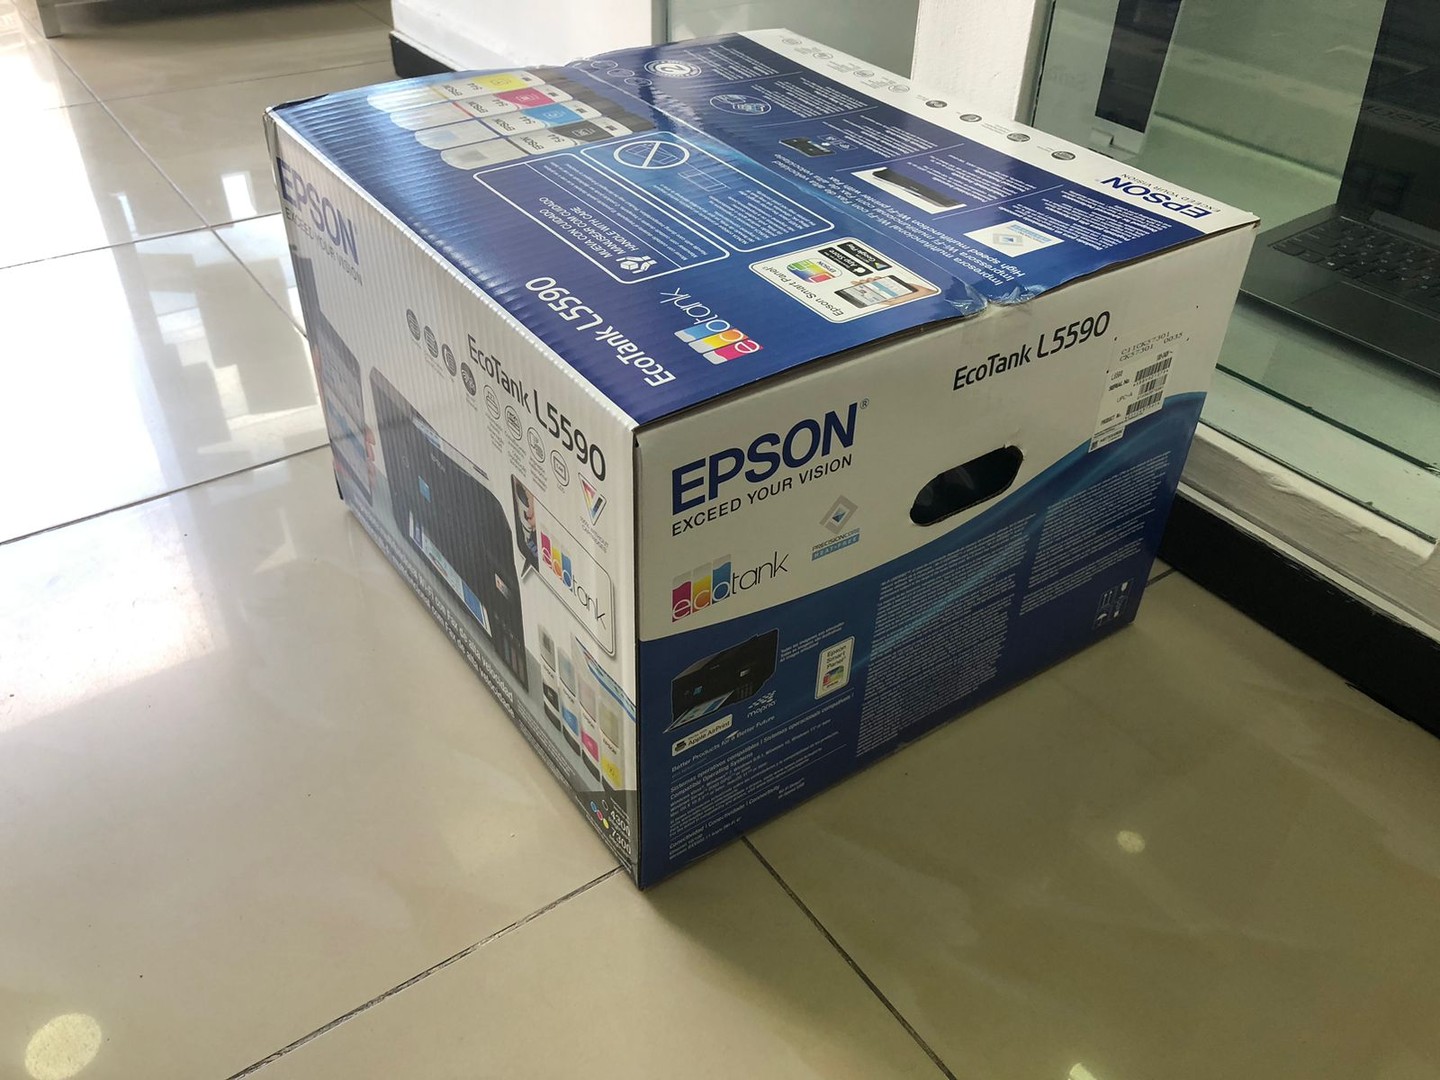 impresoras y scanners - Impresora para Oficina o Centro de Internet, Epson L5590 Nueva y Sellada 2